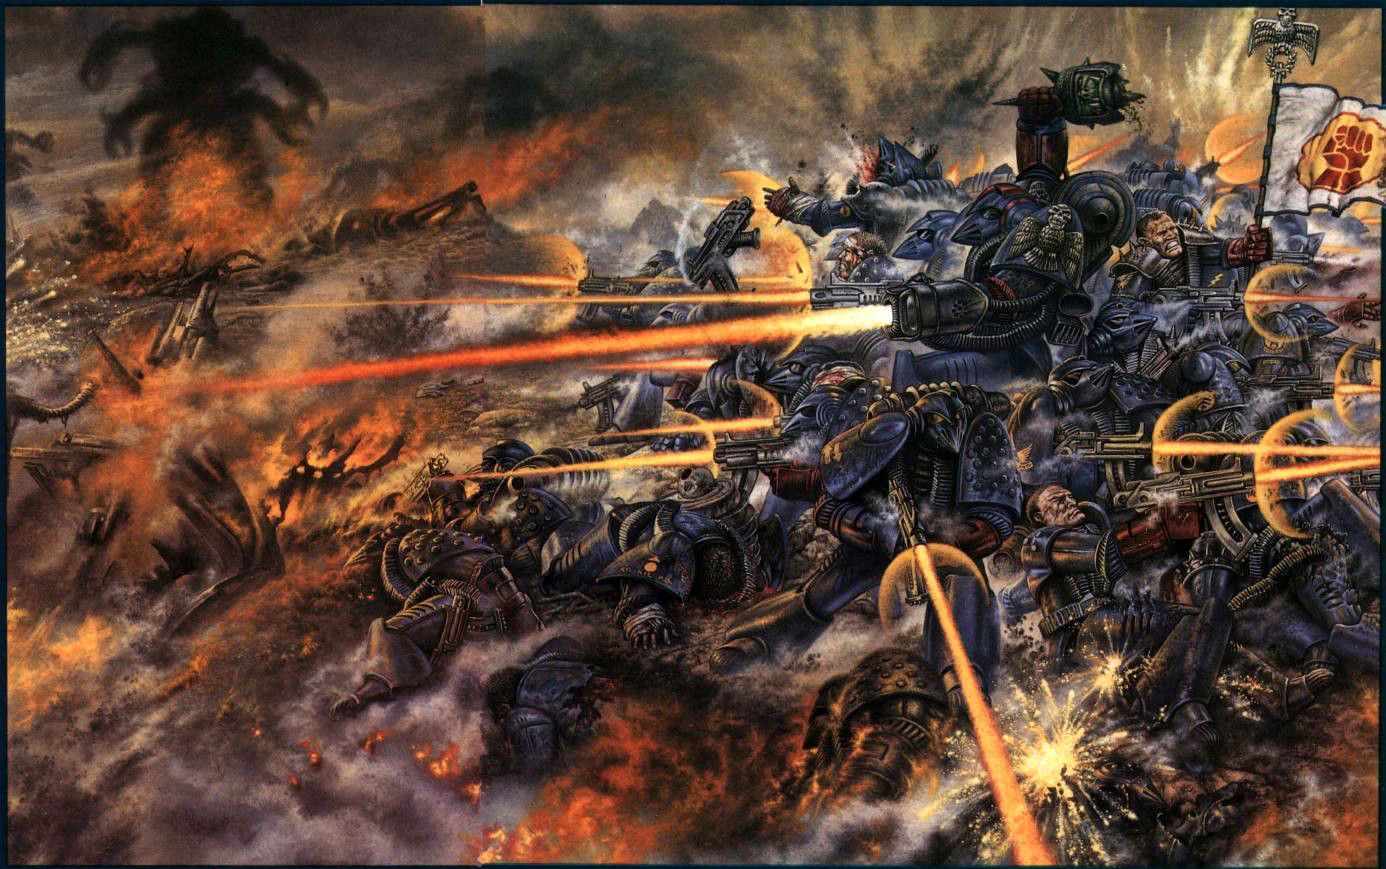 Warhammer 40K Wallpaper | 1386x869 | ID:22897